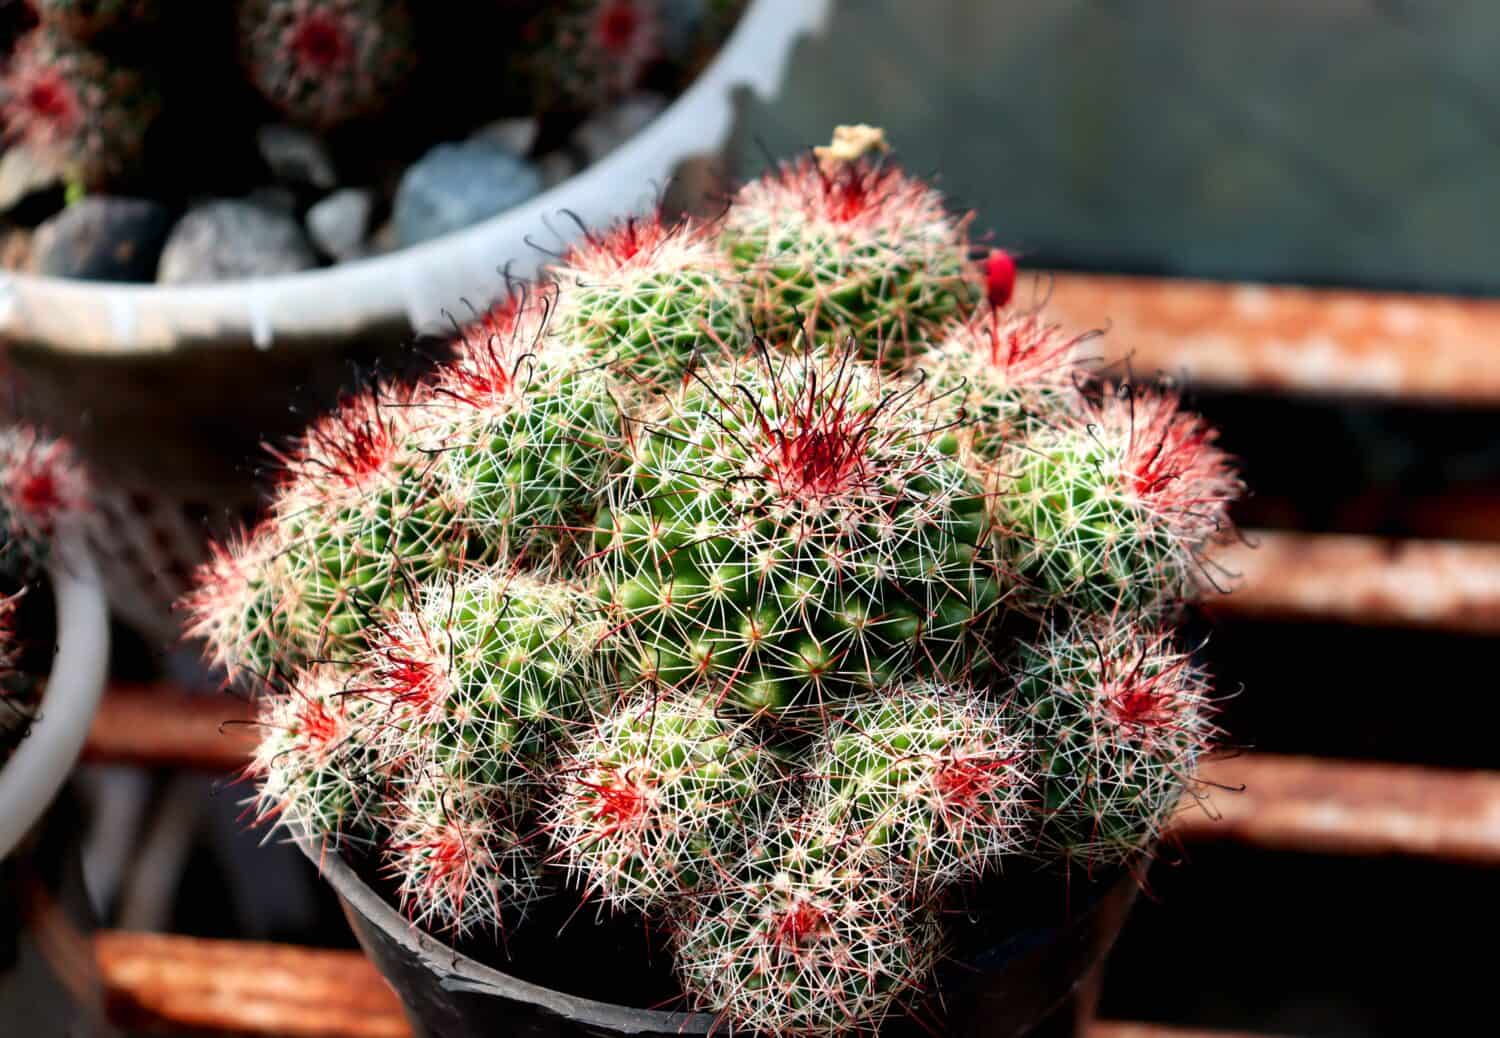 Old Lady Cactus,Cactus on a tub,closeup photo of a cactus 